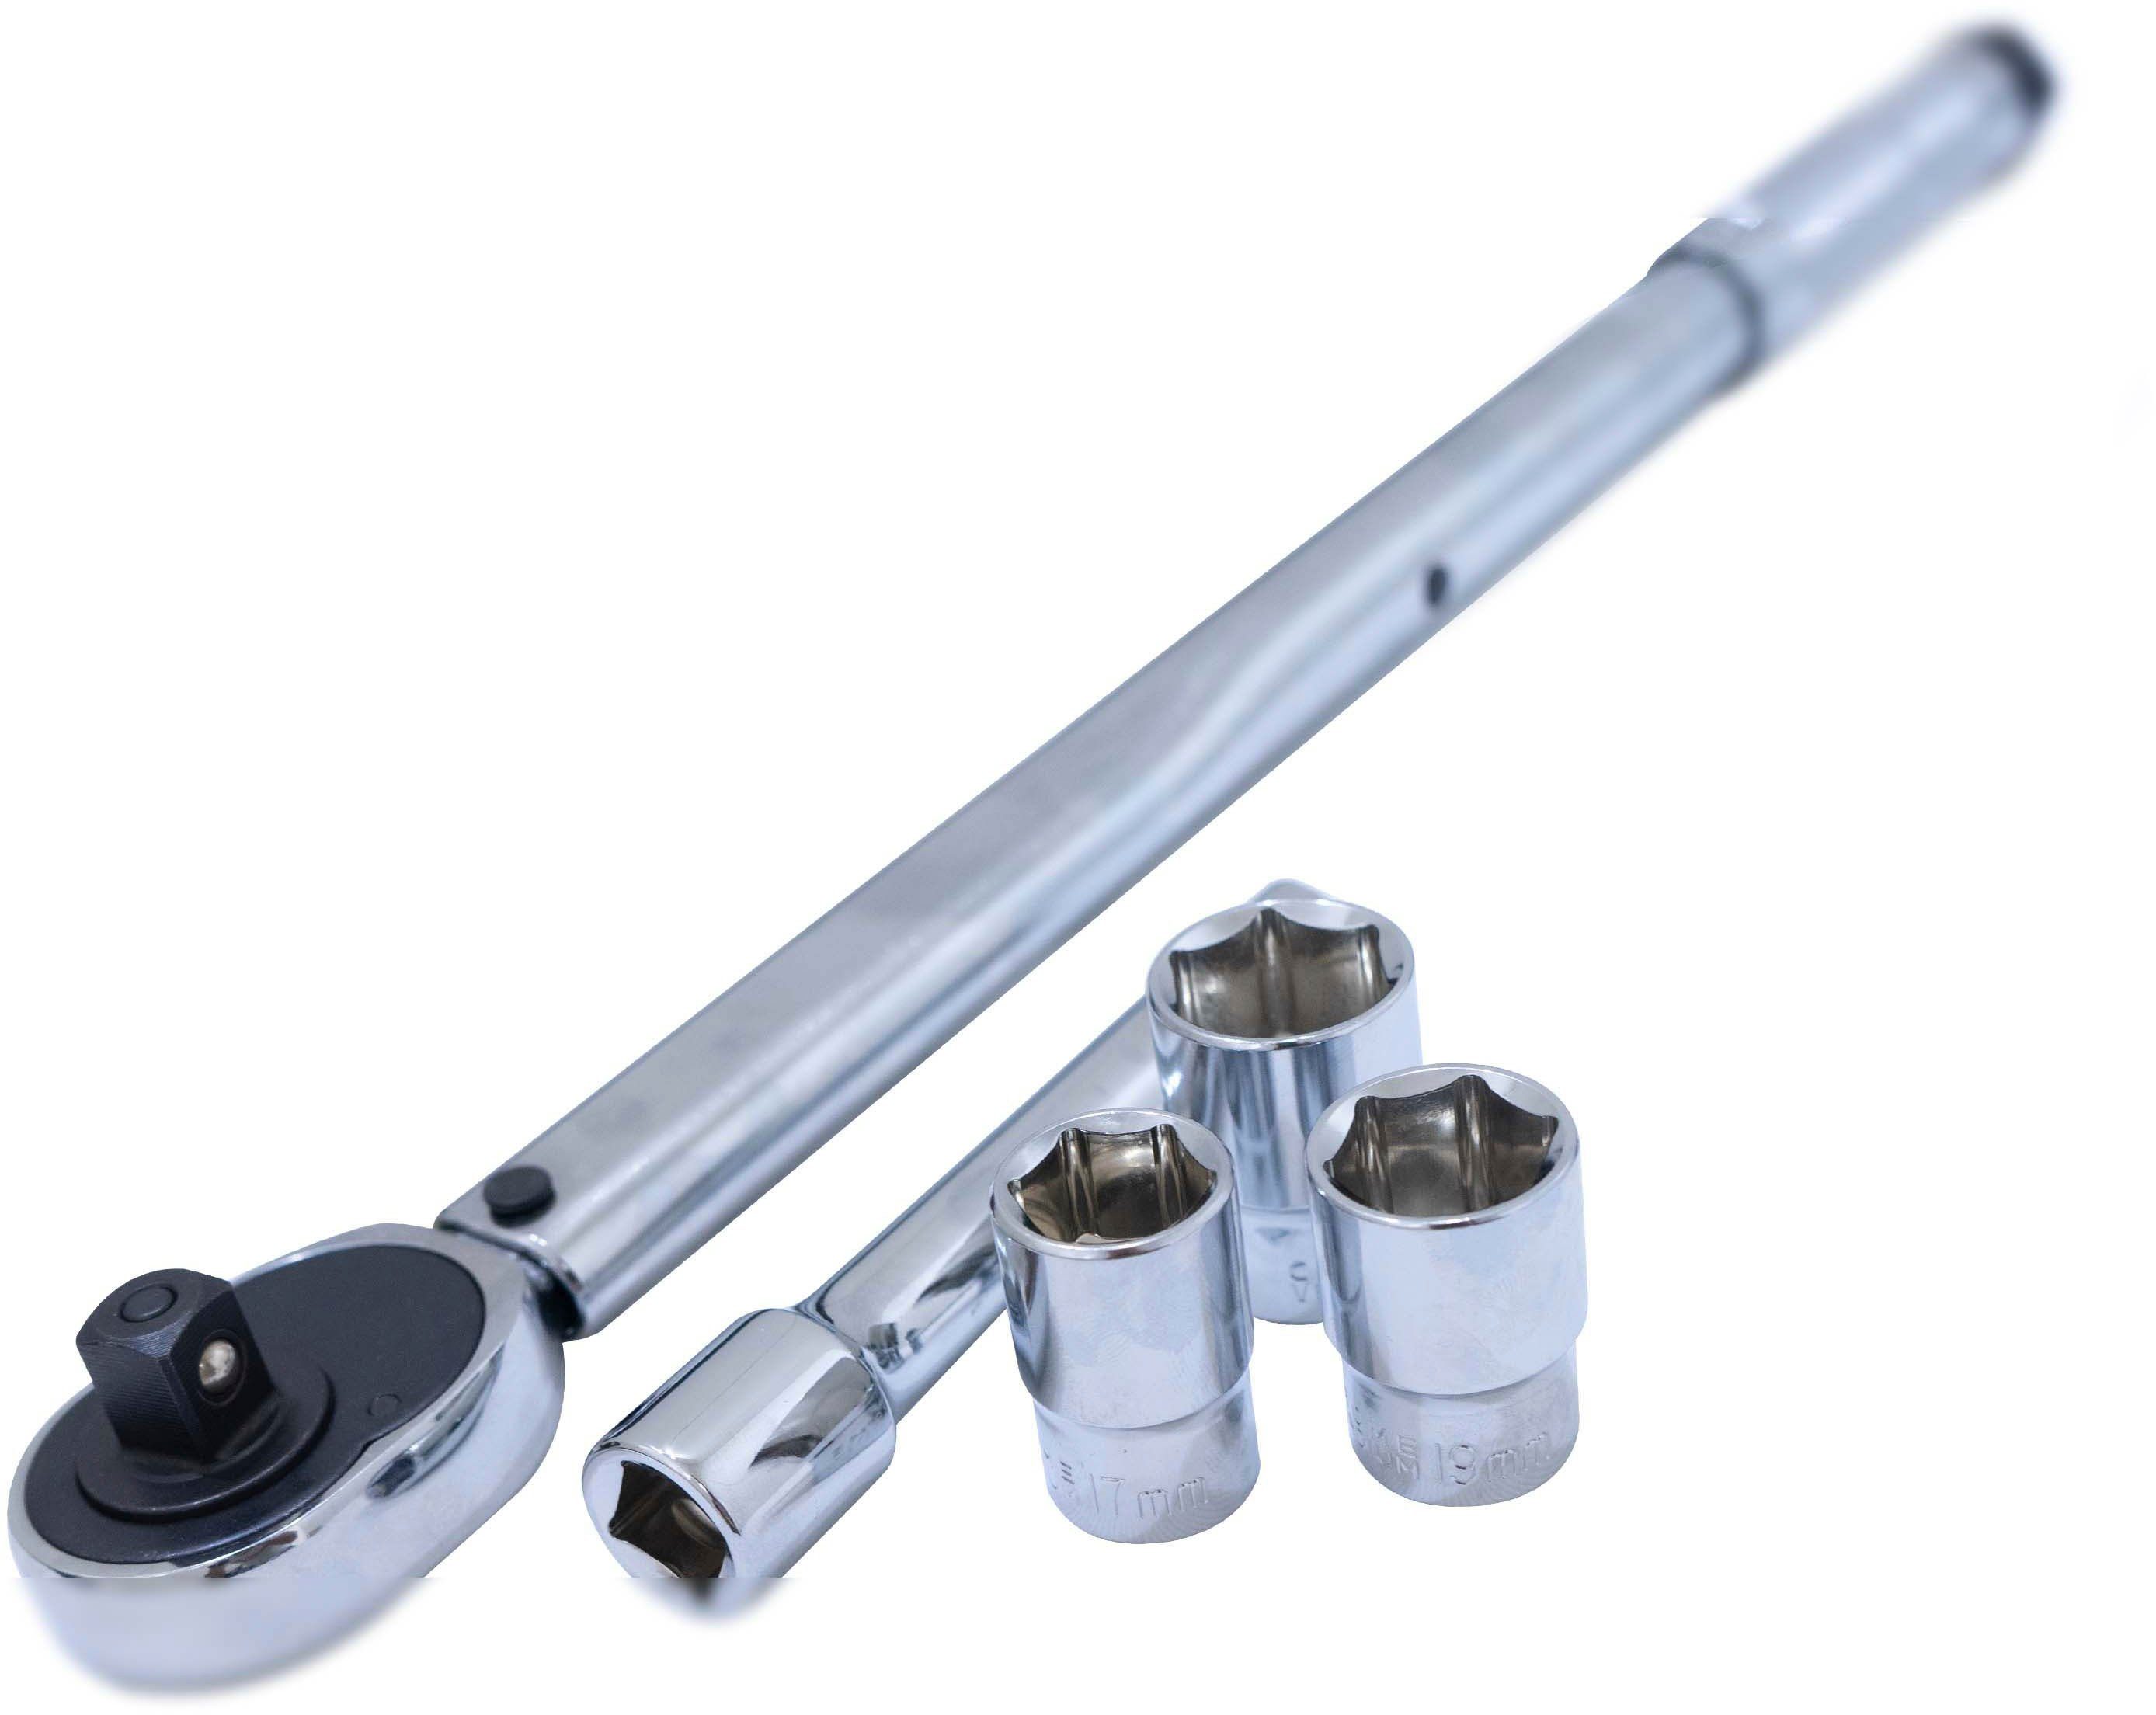 Petex Drehmomentschlüssel 40 - 210 Nm, 1/2 Zoll, inkl. 3 Stecknüsse, 17/19/21 mm, 1 Verlängerung und Aufbewahrungsbox | Drehmomentschlüssel